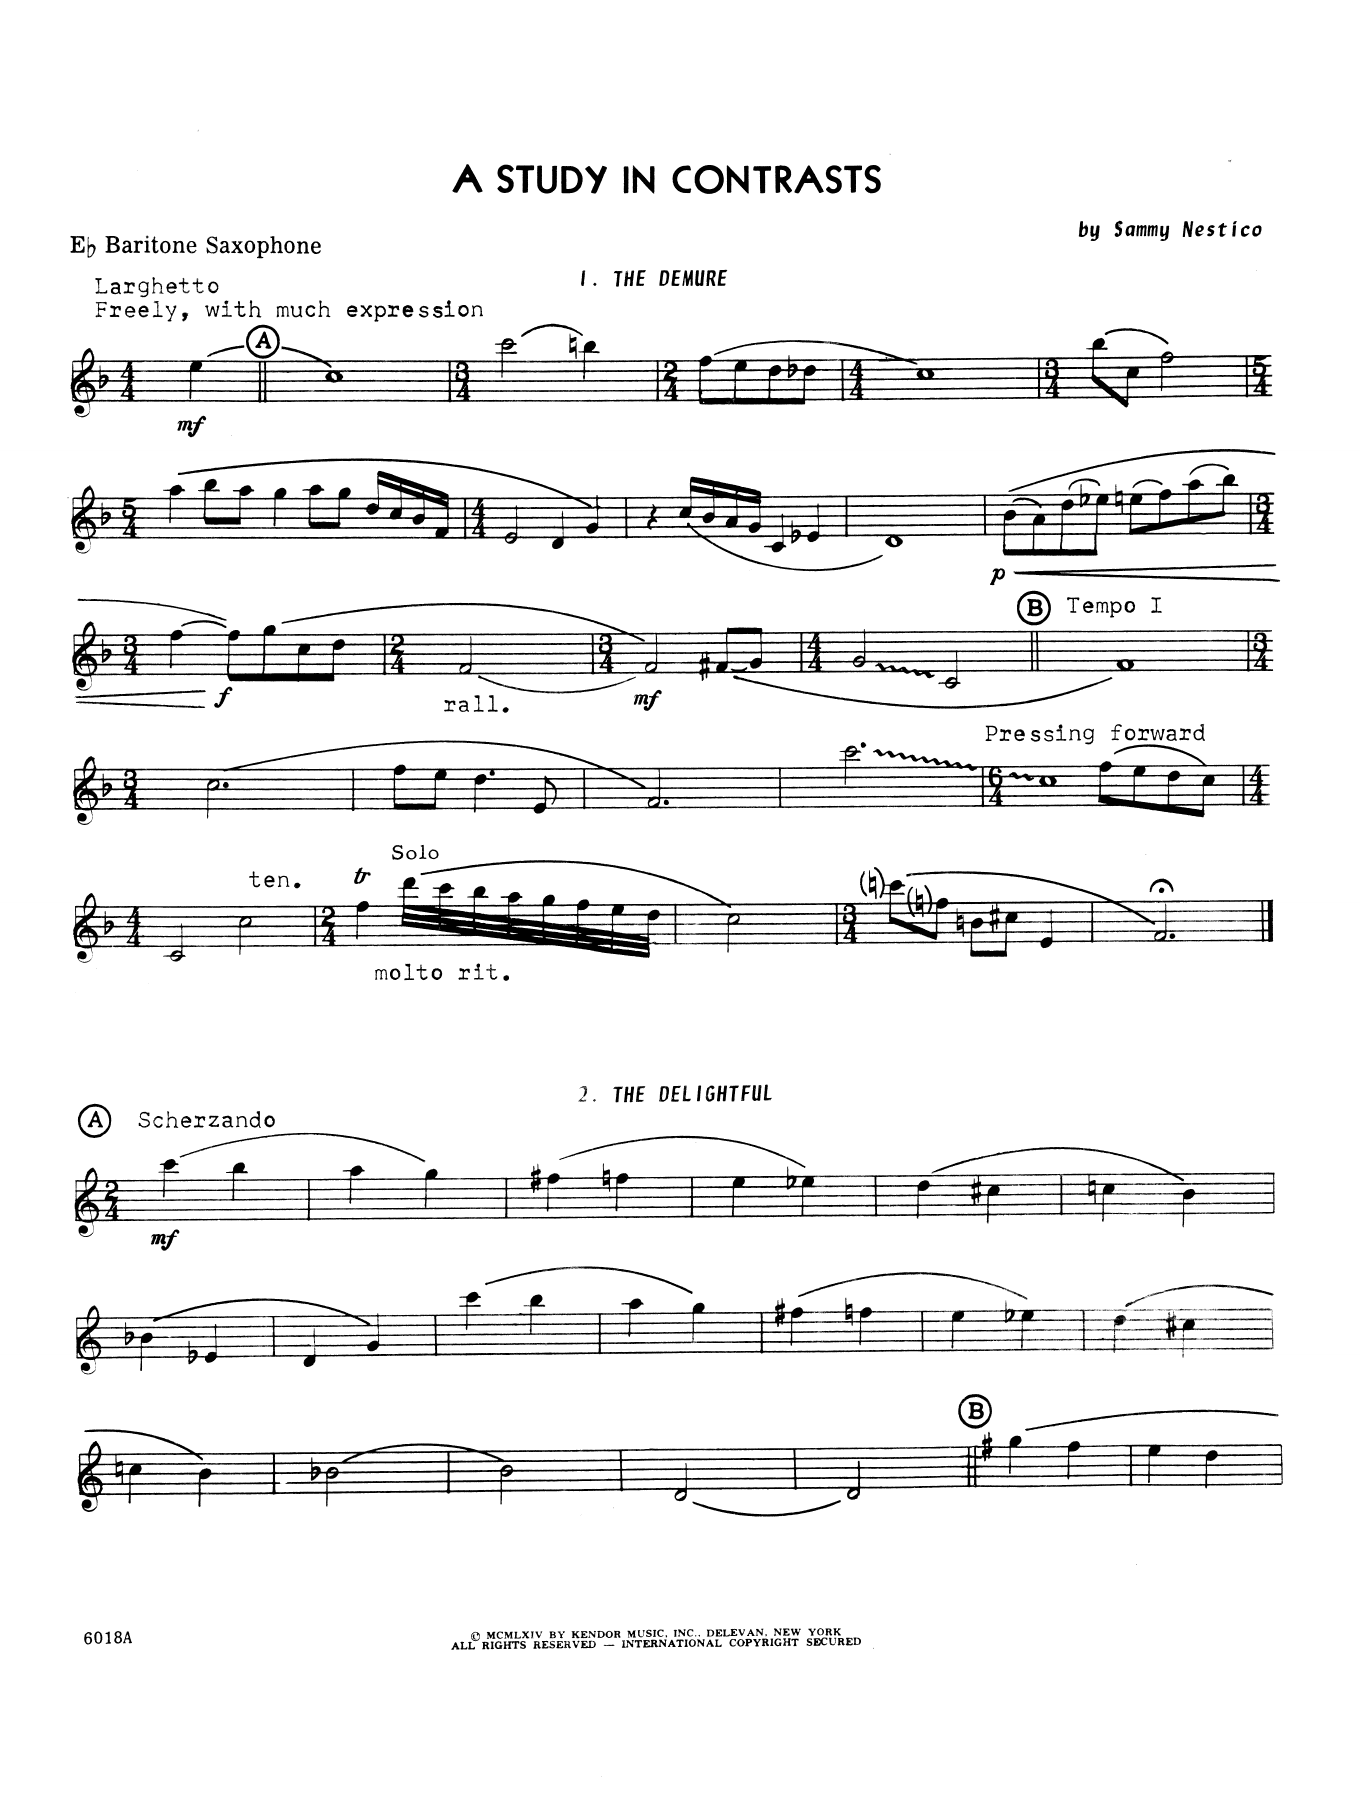 Download Sammy Nestico A Study In Contrasts - Eb Baritone Saxo Sheet Music